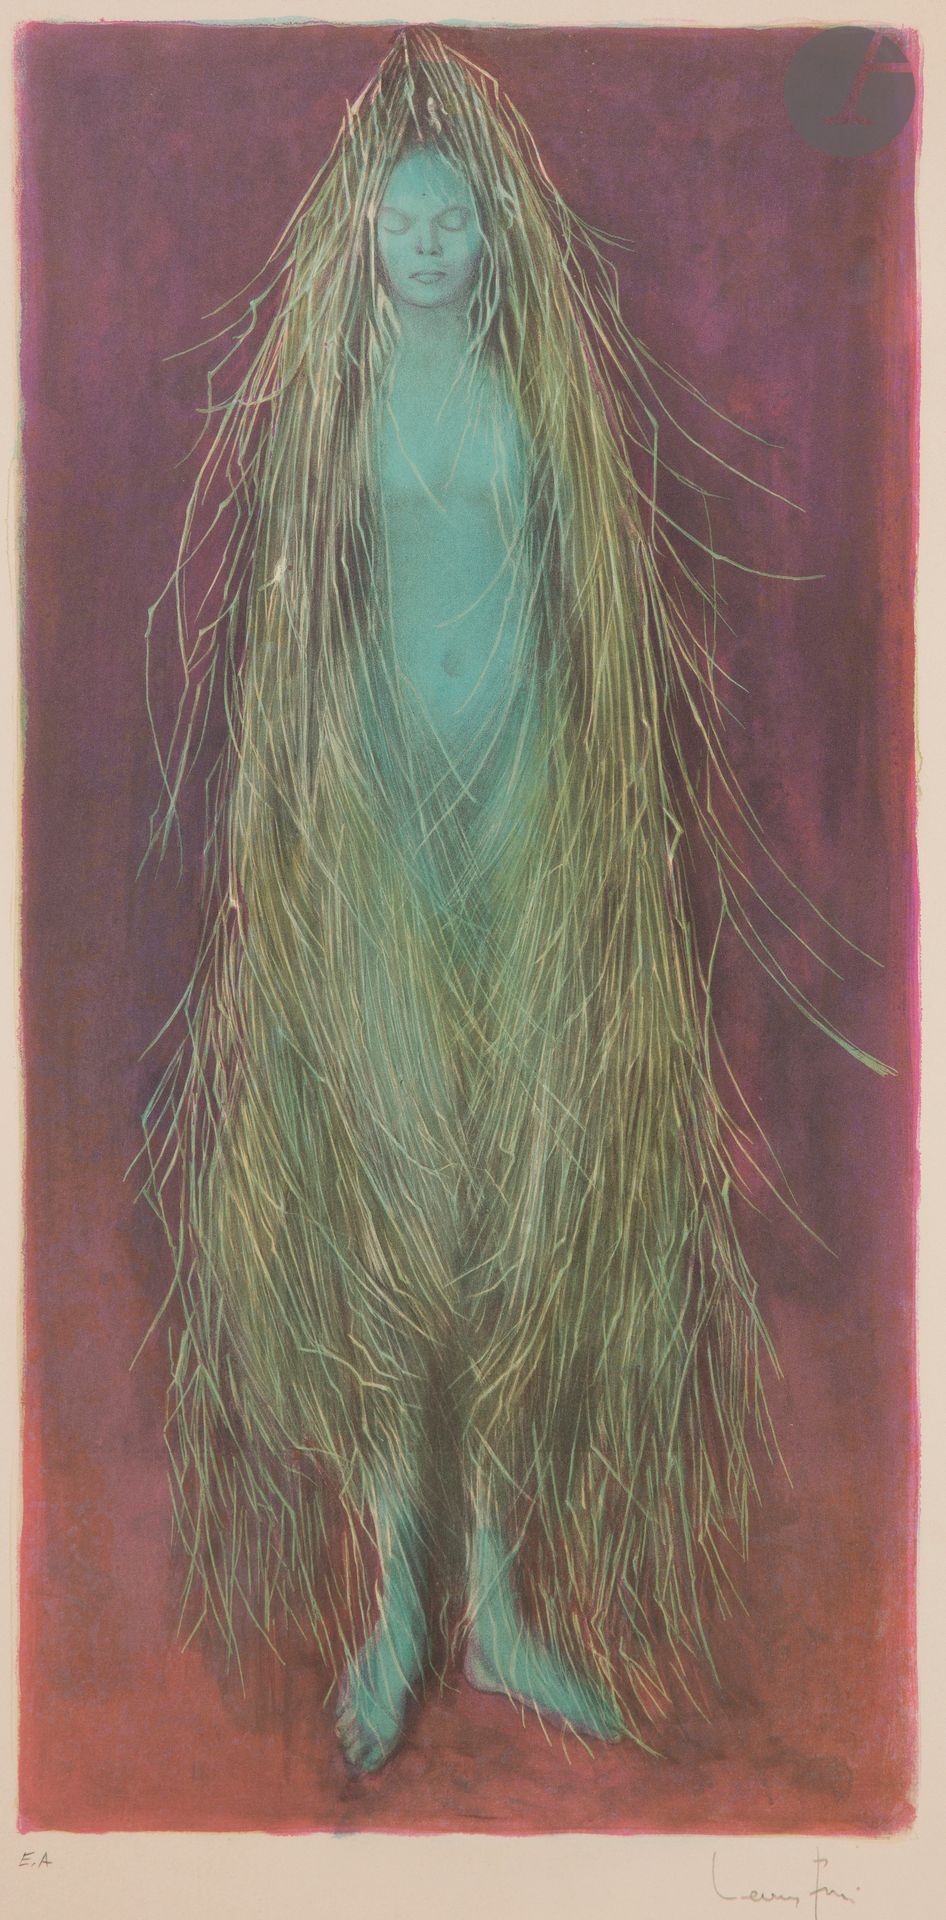 Null 莱昂诺尔-菲尼(1908-1996)

蓝色长发的女人。石版画。275 x 550毫米。以彩色印刷。非常漂亮的象牙色牛皮纸样张，有 "E.A "字样，&hellip;